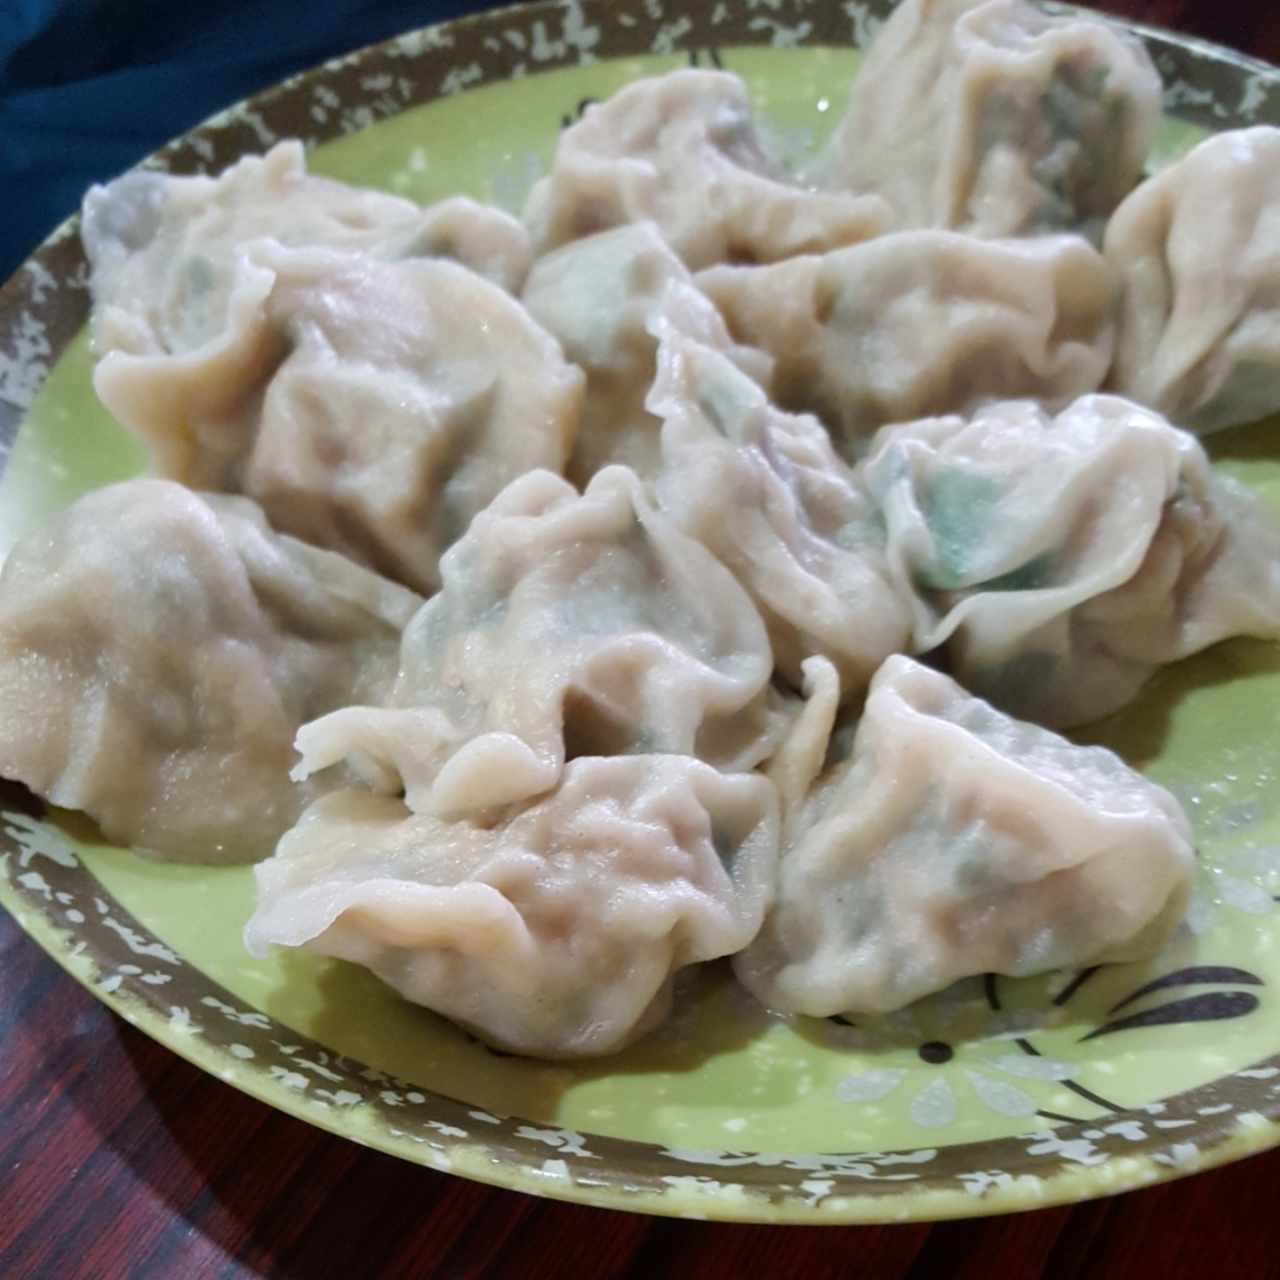 dumplings sancochados de puerco